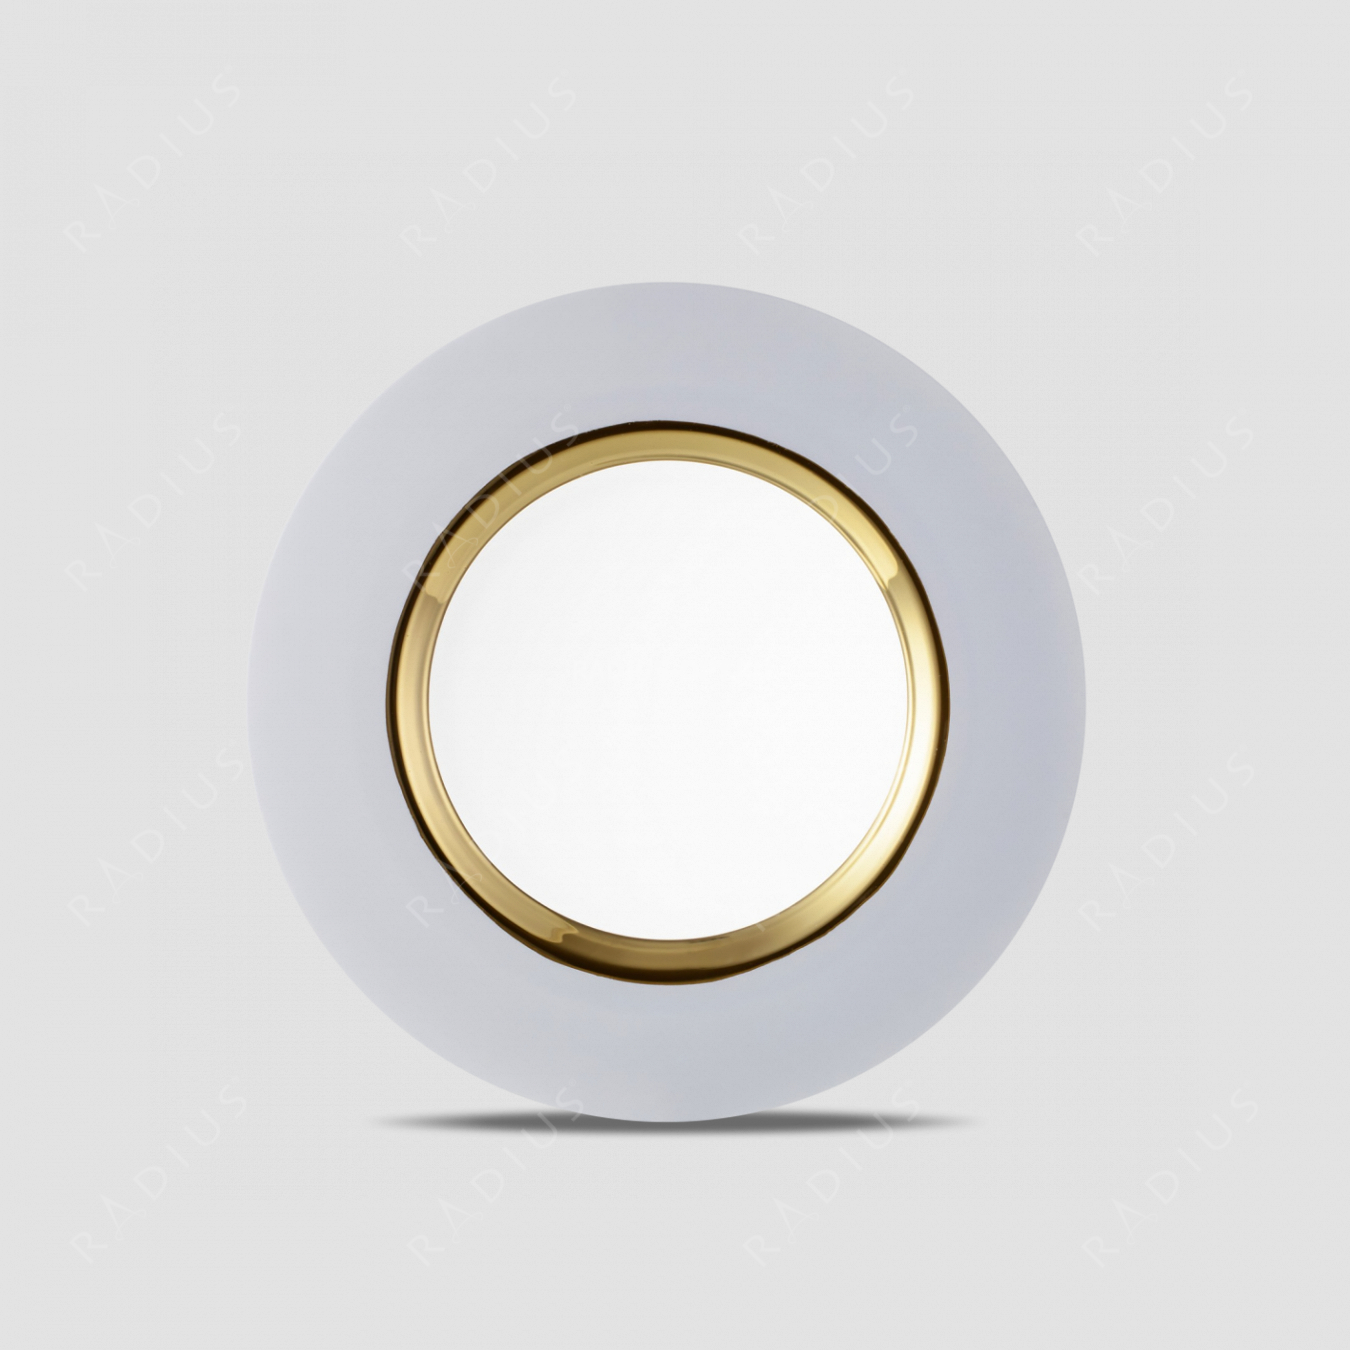 Тарелка Weiss, диаметр: 35 см, материал: бессвинцовый хрусталь, цвет: белый/золото, серия Cosmo, EISCH, Германия